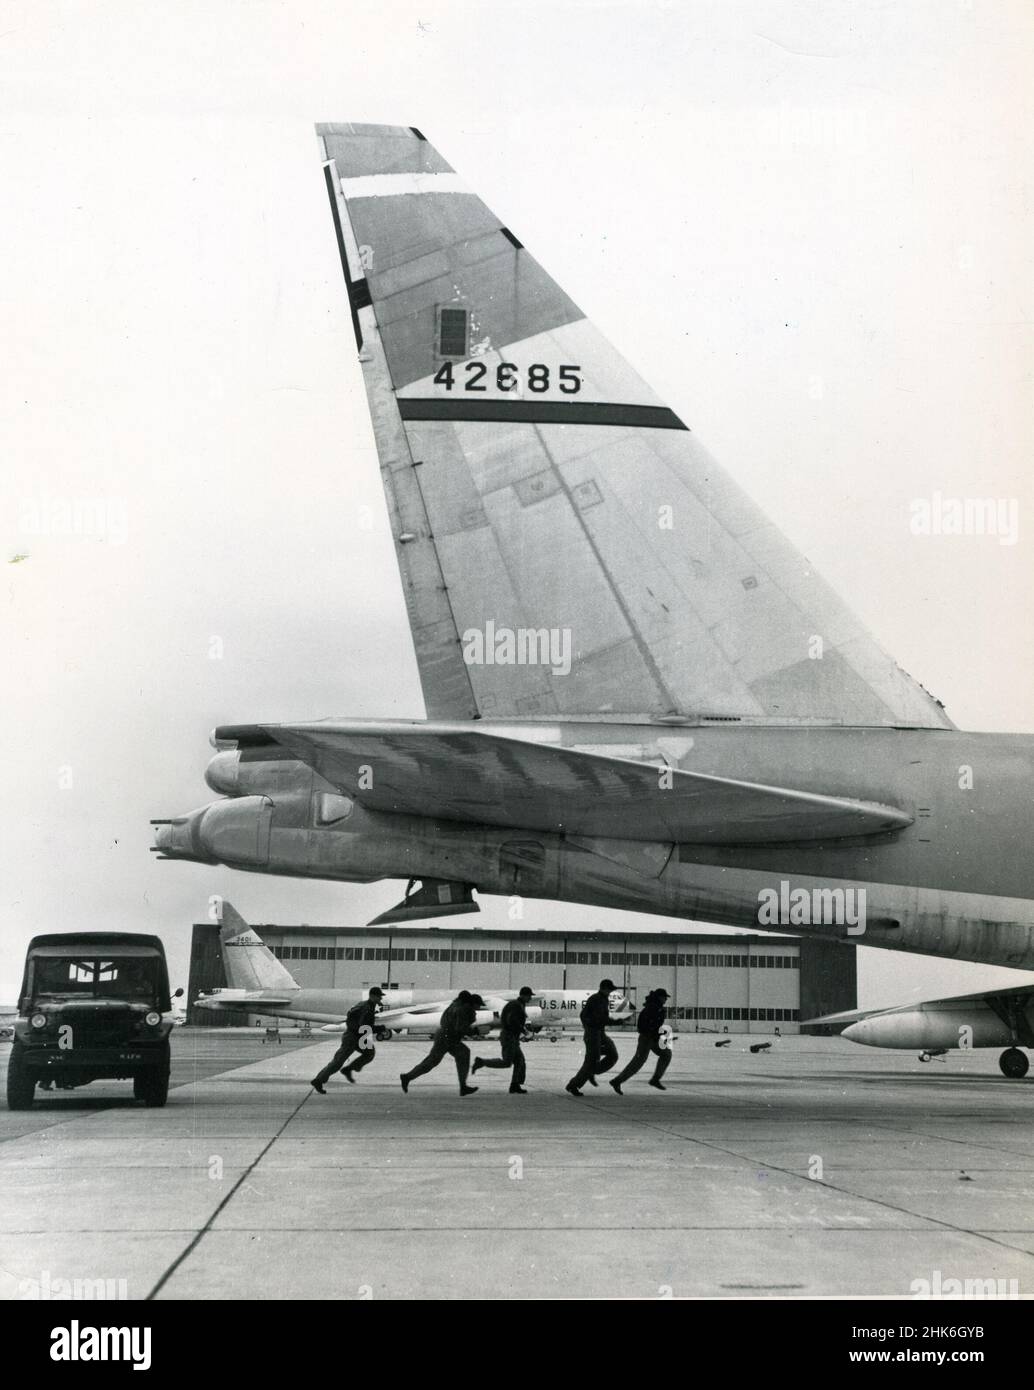 1959- les équipages du Commandement aérien stratégique (sac) de la Force aérienne des États-Unis courent de leurs jeeps pour monter à bord d'un avion prêt au combat dans le cadre d'une mission d'entraînement.La sac a été créée en mars 1946 avec une mission principale de la « domination soviétique ». Banque D'Images